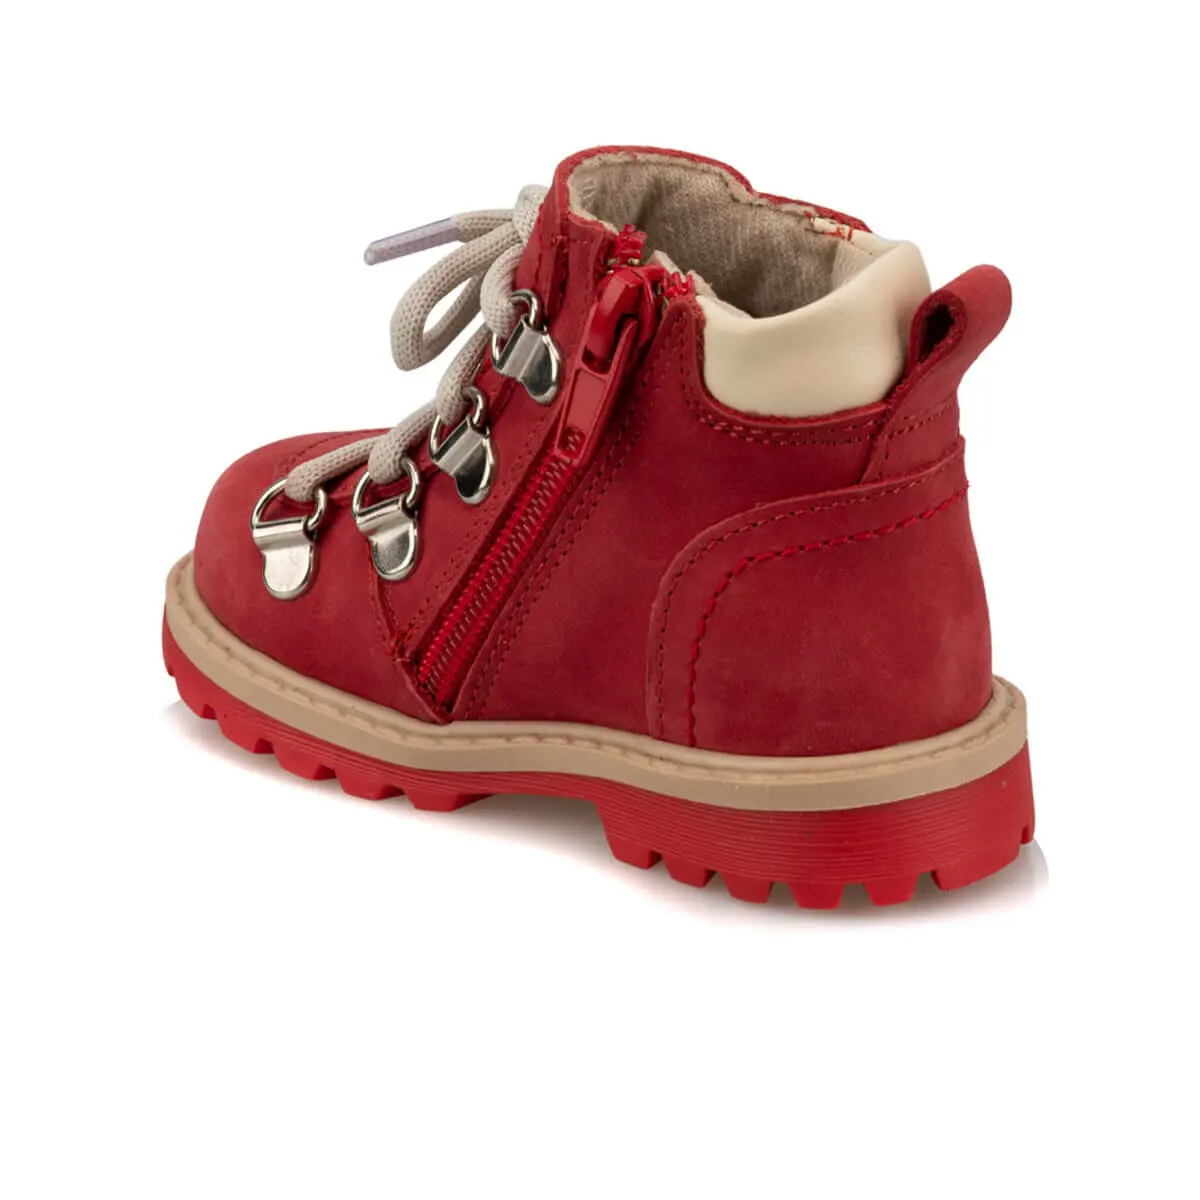 FLO 92.511746,i красные женские детские ботинки Polaris